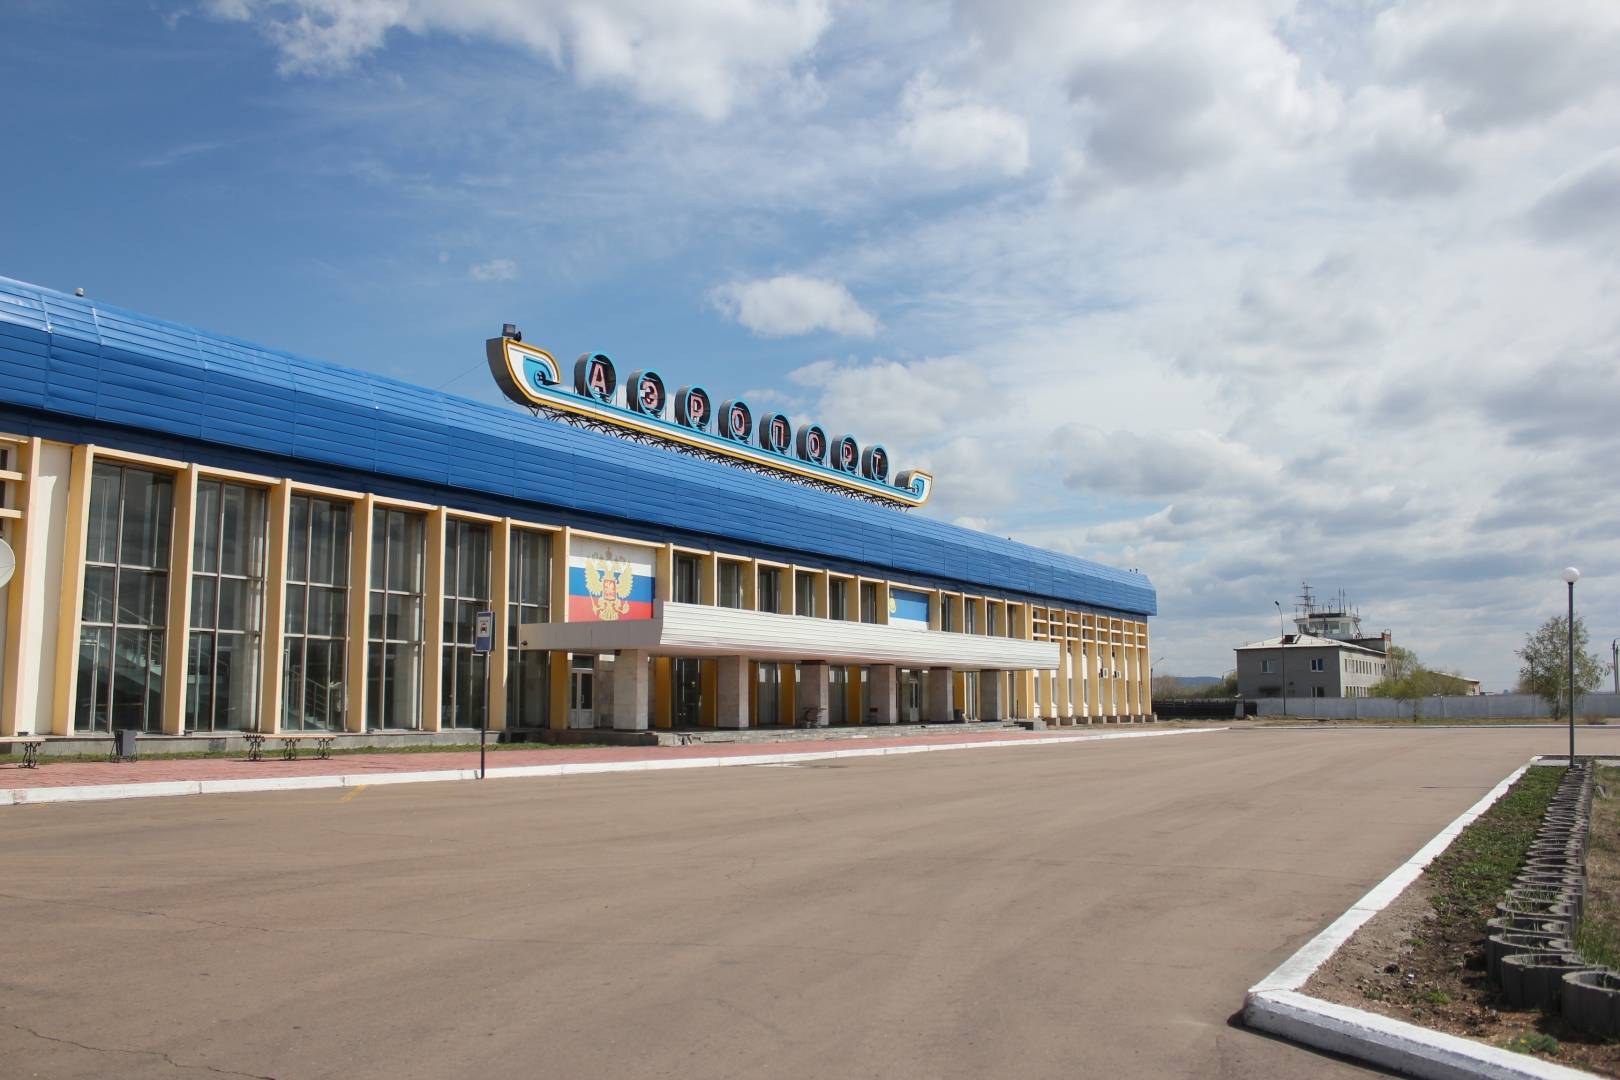 Ближайший аэропорт к Байкалу